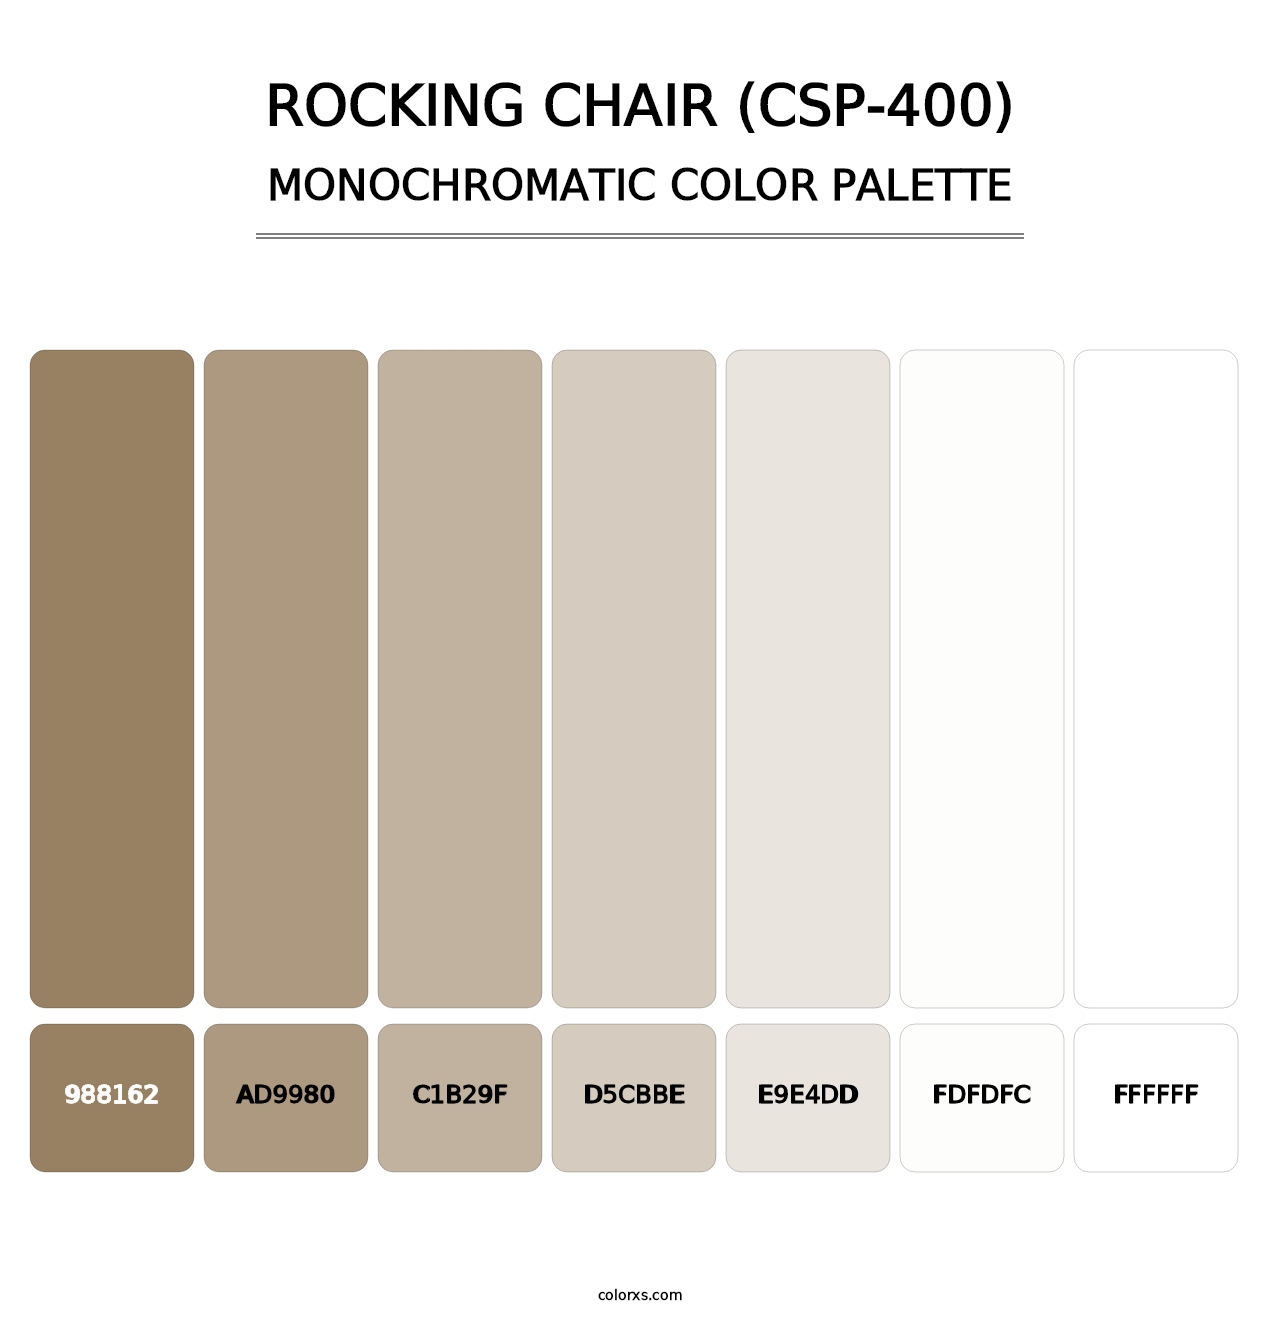 Rocking Chair (CSP-400) - Monochromatic Color Palette